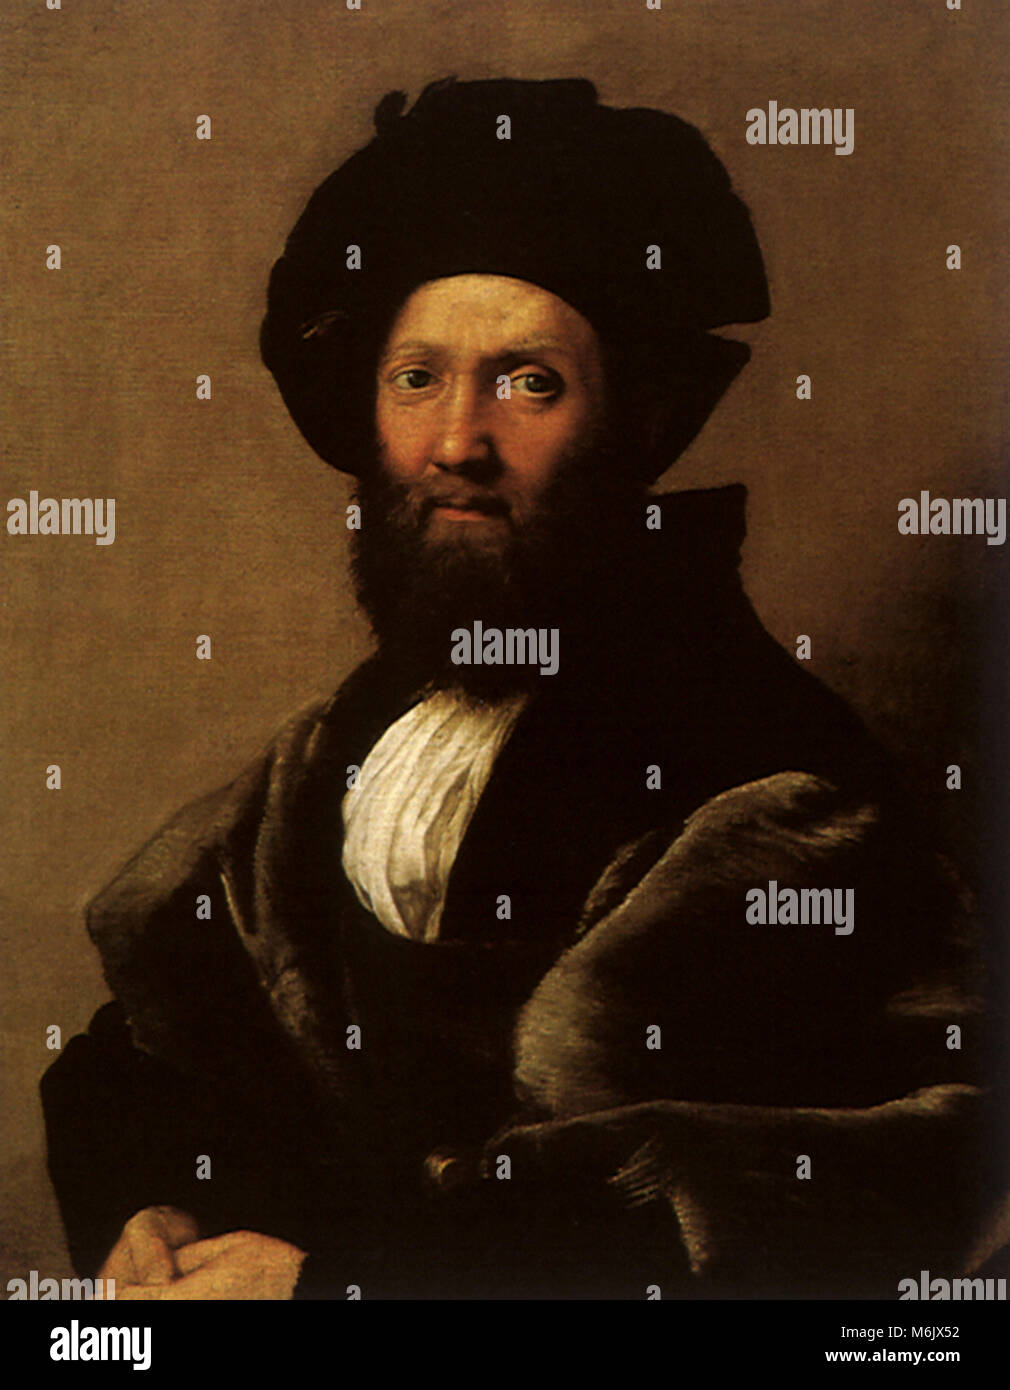 Portrait of Baldassare Castiglione, Raphael, Raffaello S., 1515. Stock Photo